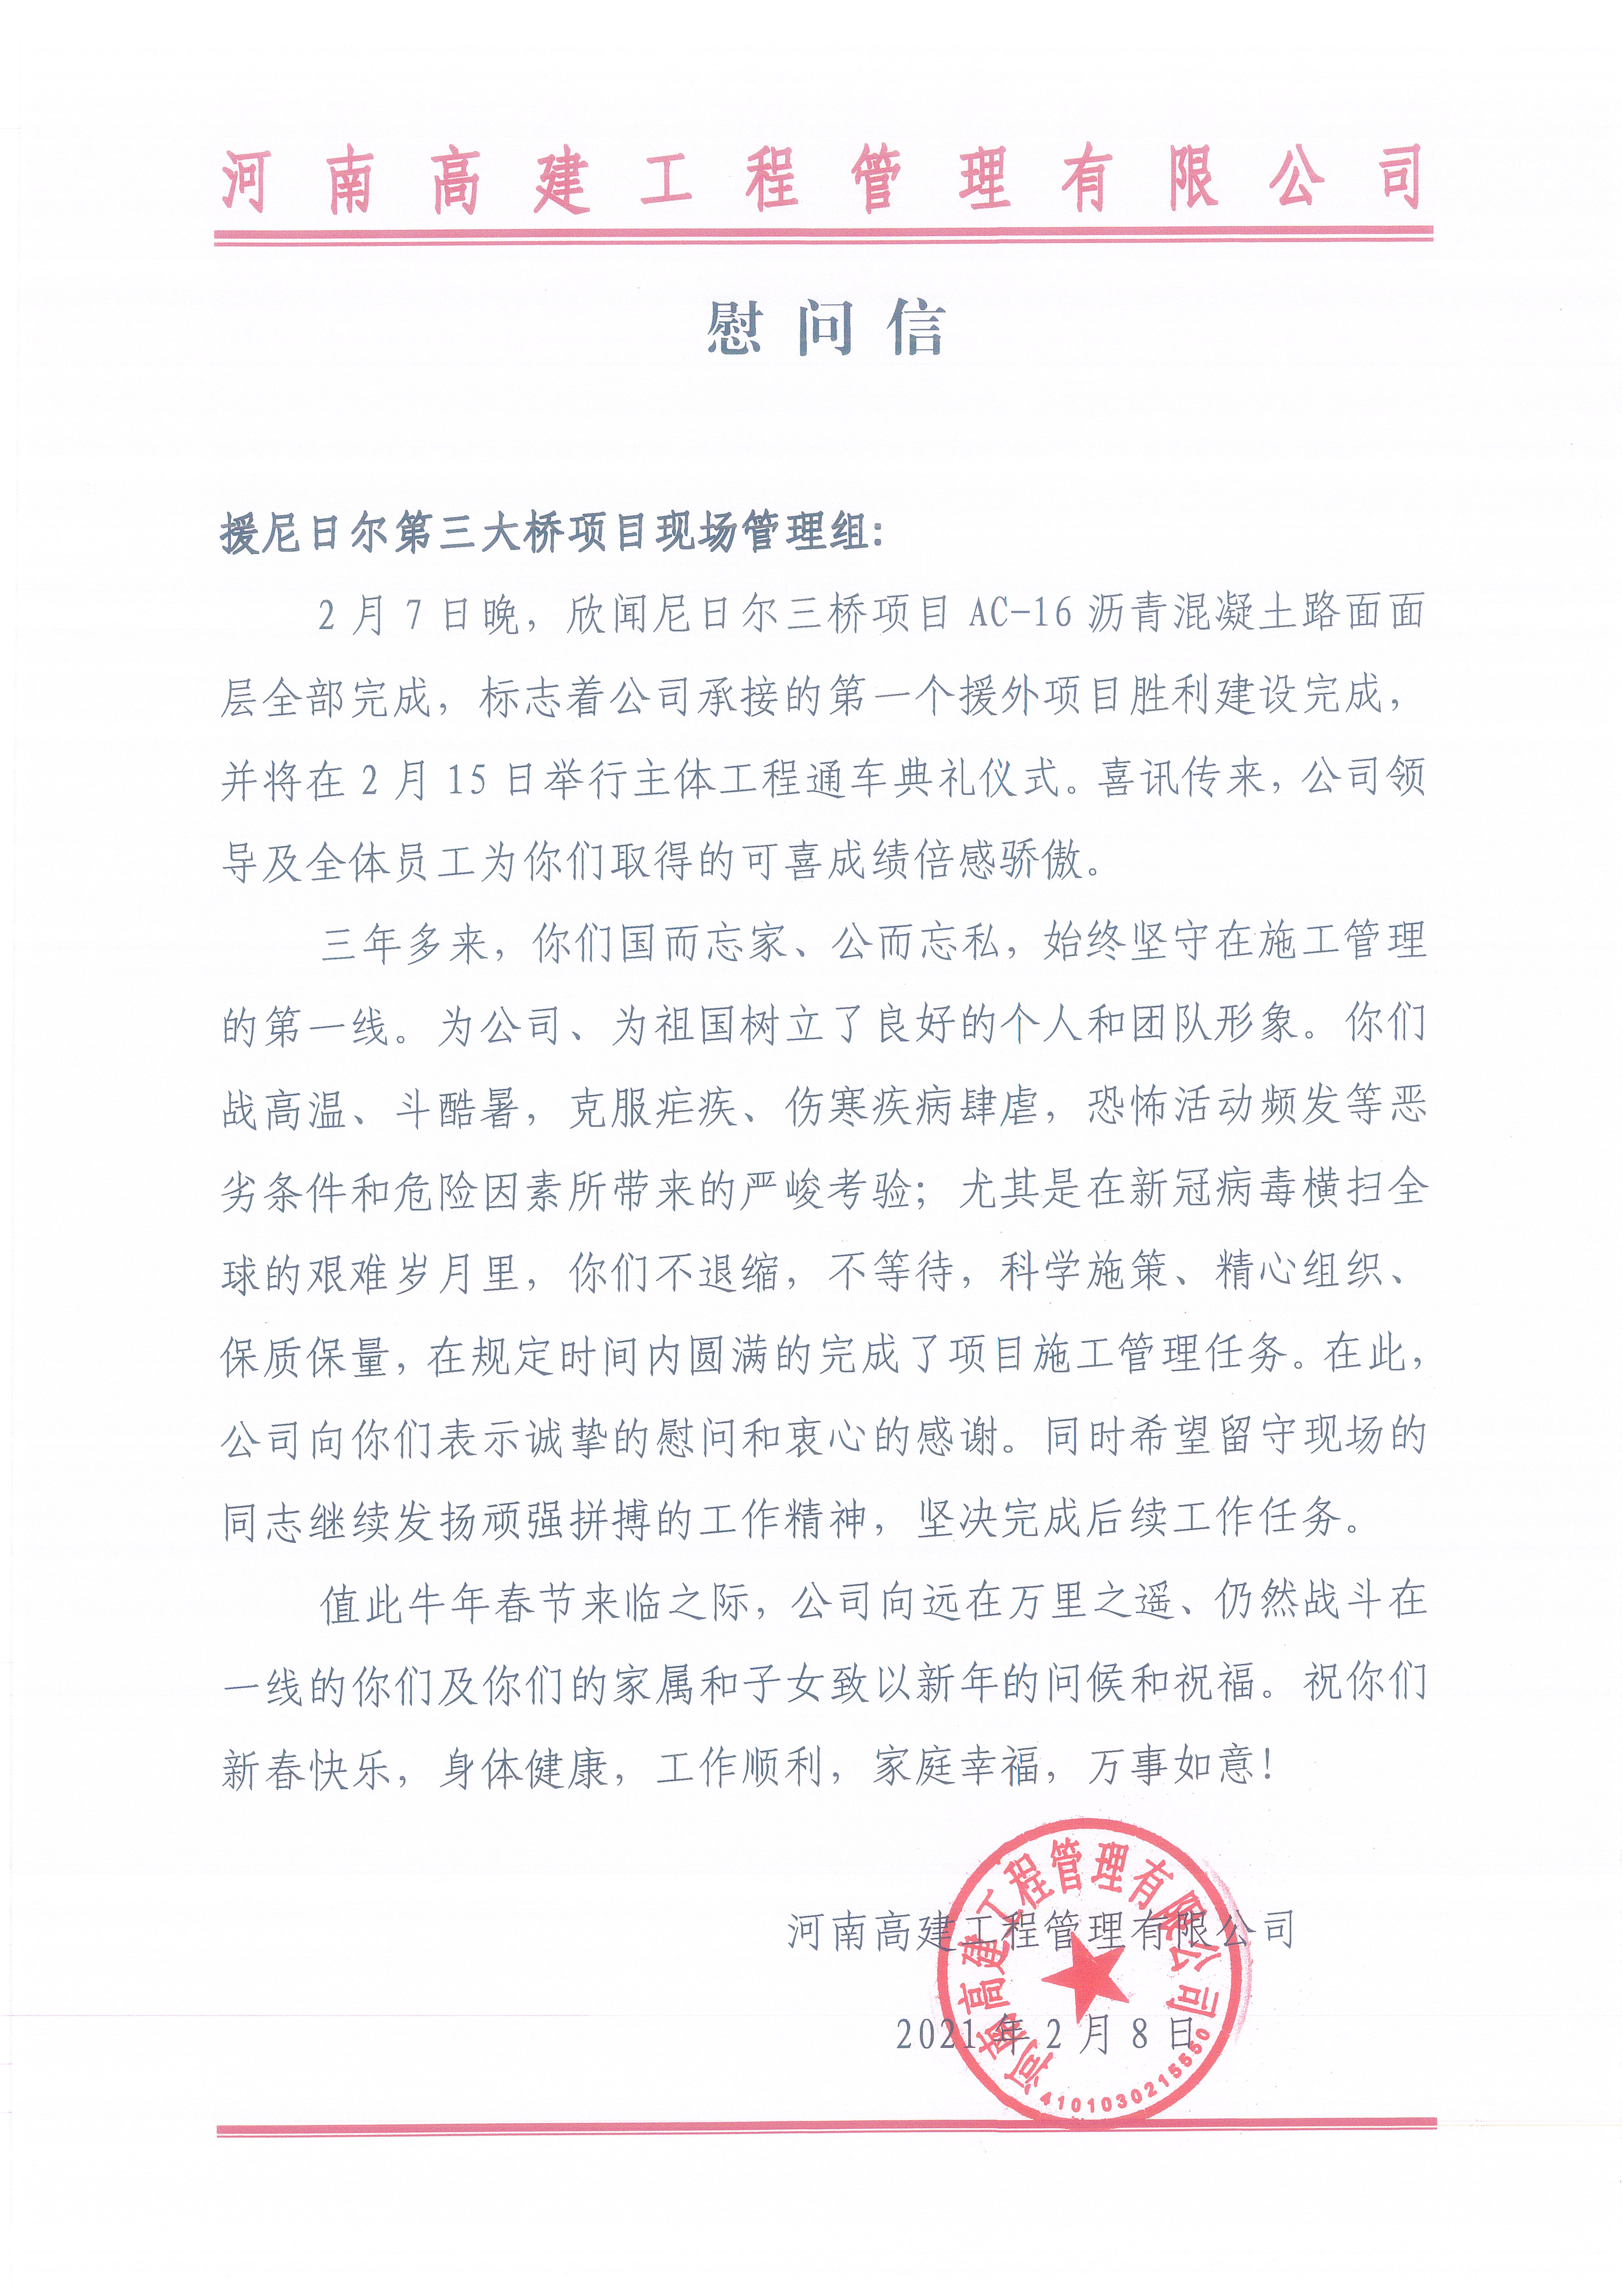 河南高建工程管理有限公司的慰问信